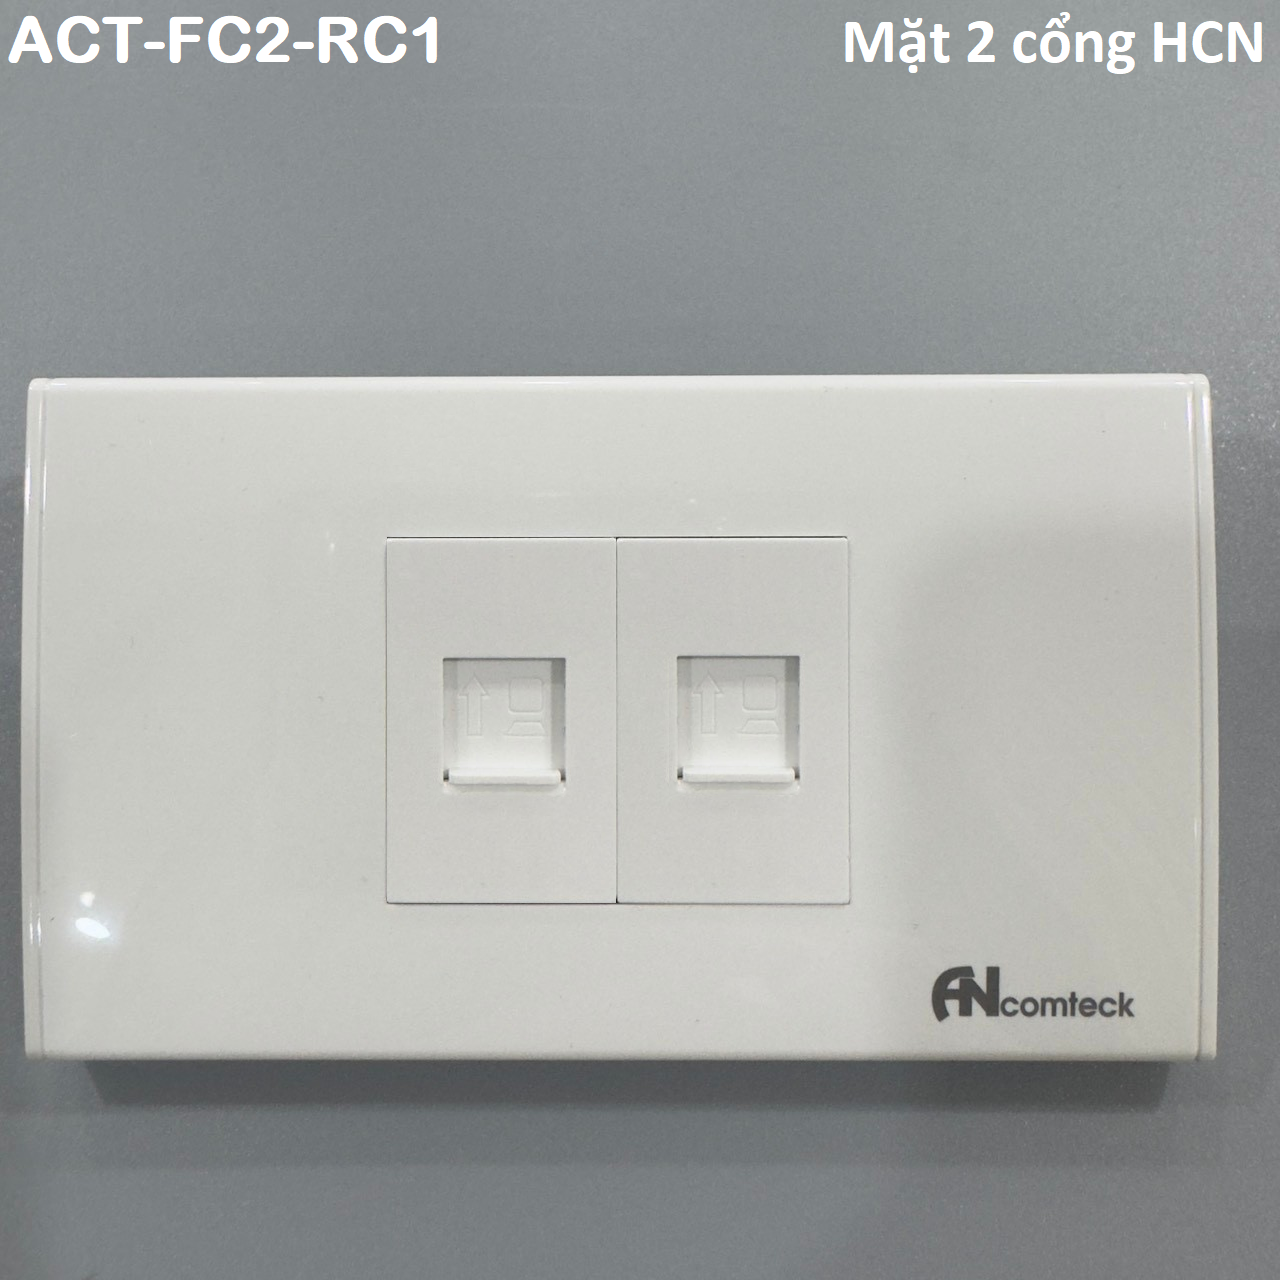 Mặt 2 cổng Ancomteck , mã  ACT-FC2-RC1